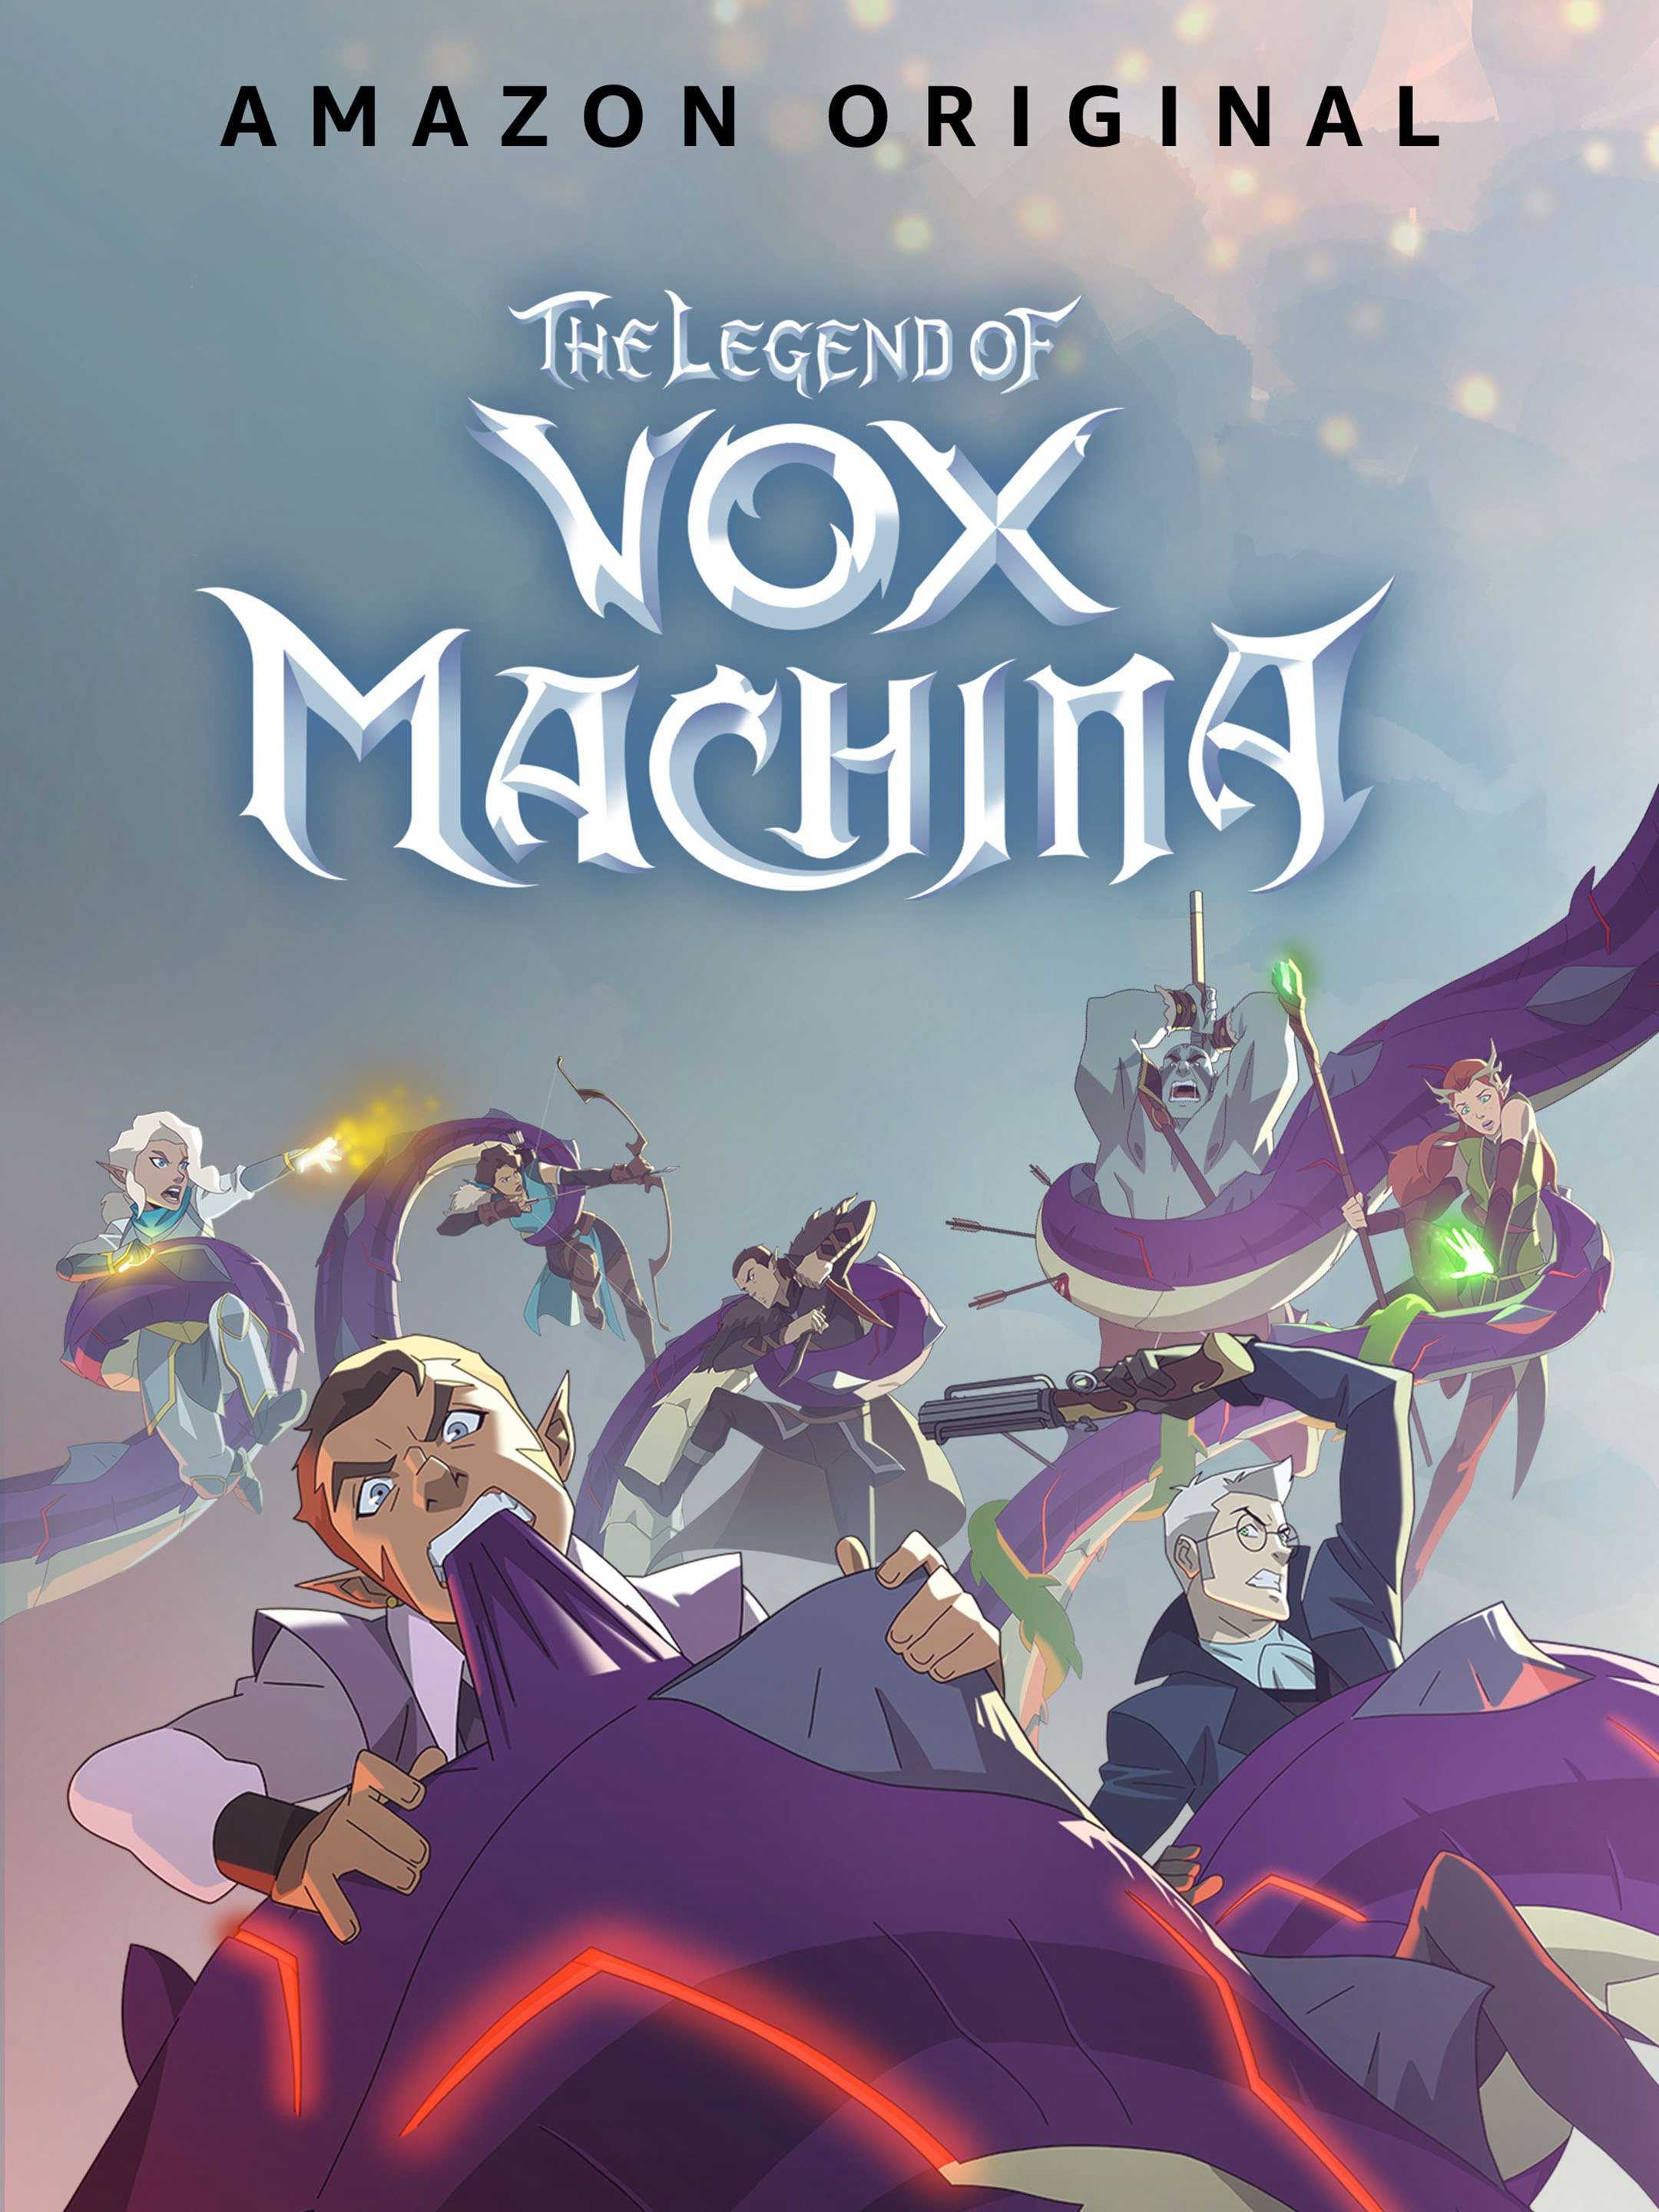 The legend of vox machina - The legend of vox machina